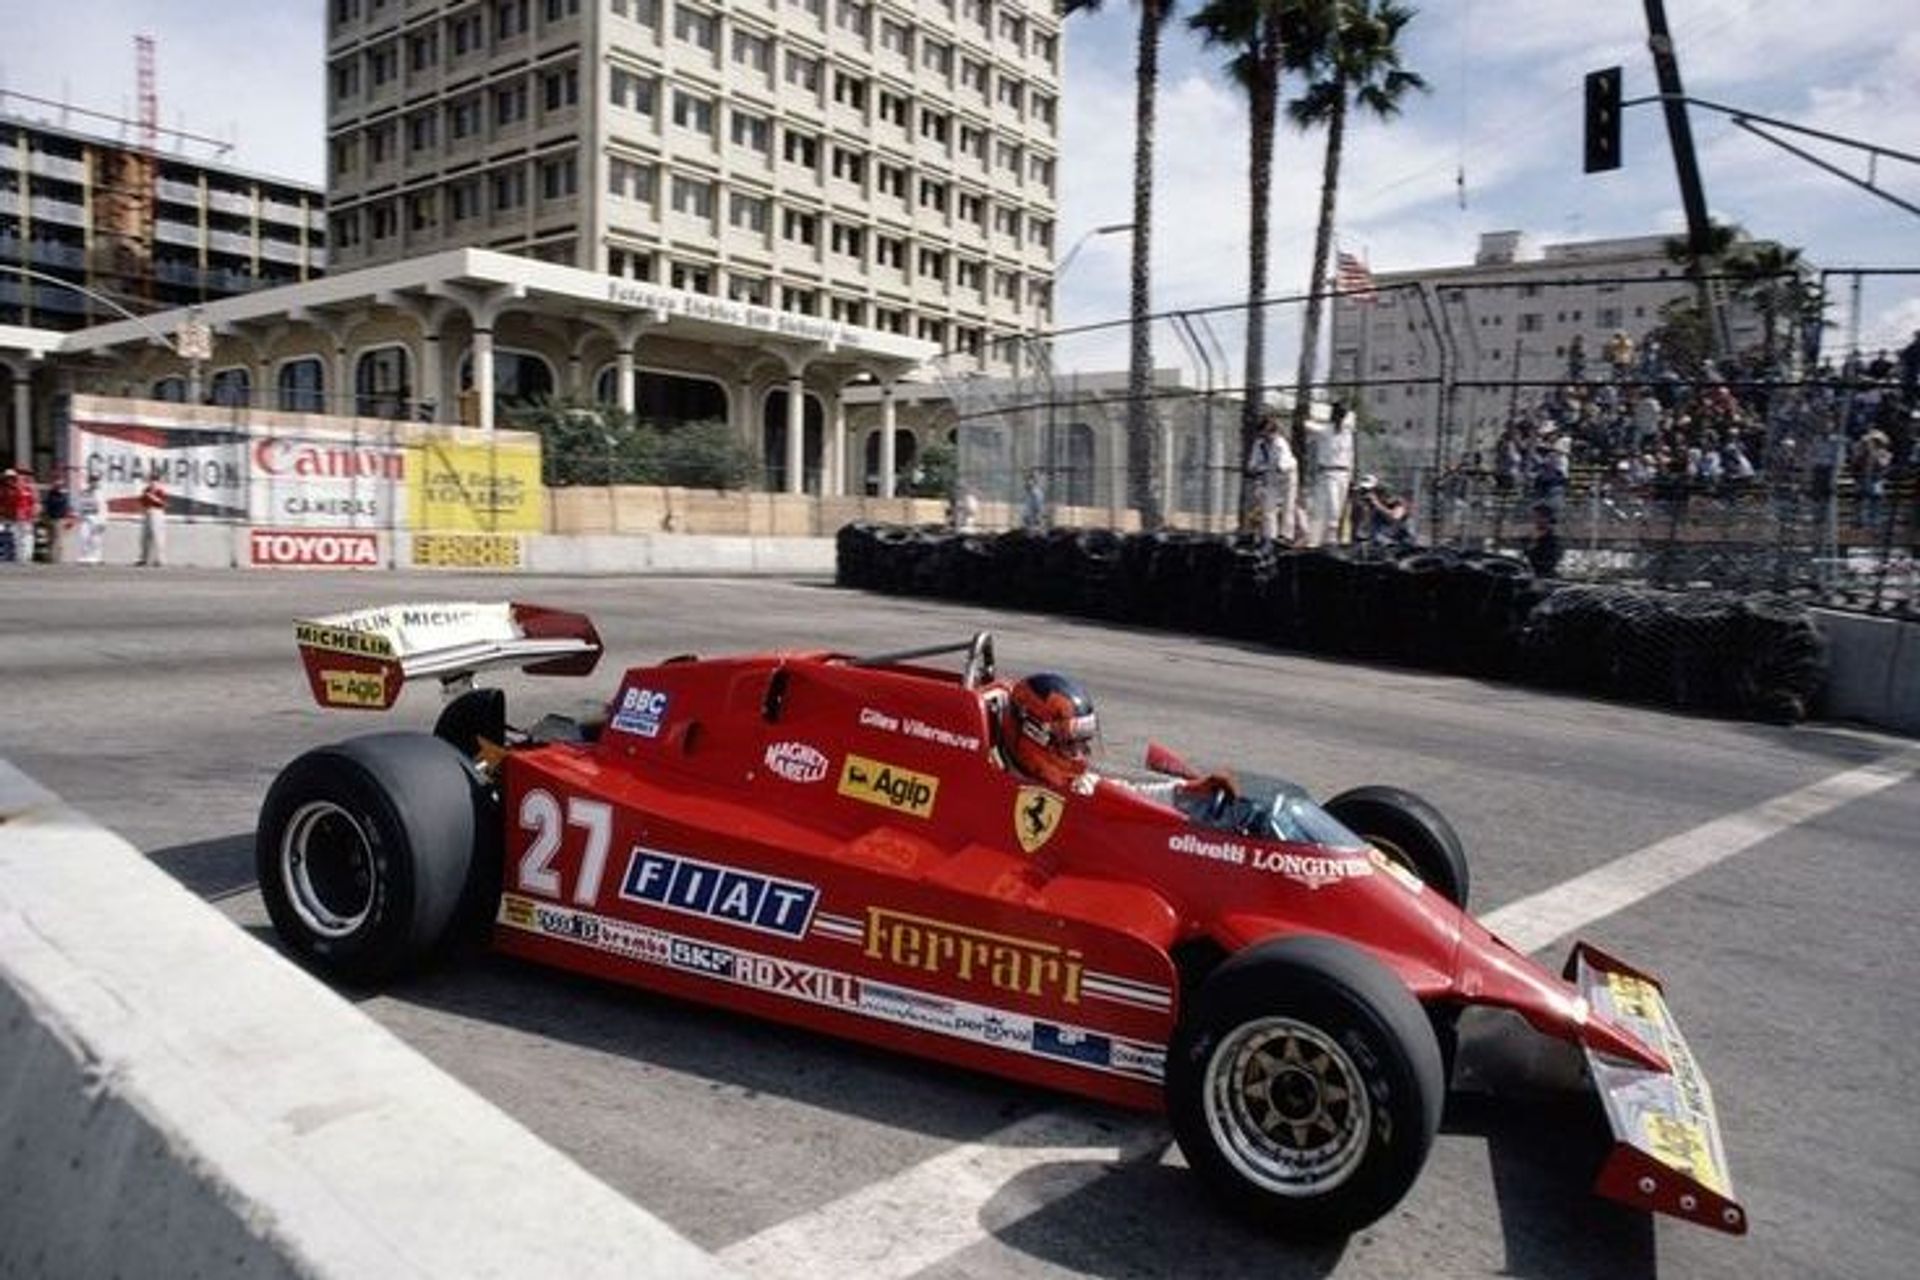 Nelle prove del Gran Premio degli USA Ovest del 1981, le Ferrari 126 assunsero la dizione CX per l'uso del sovralimentatore Comprex